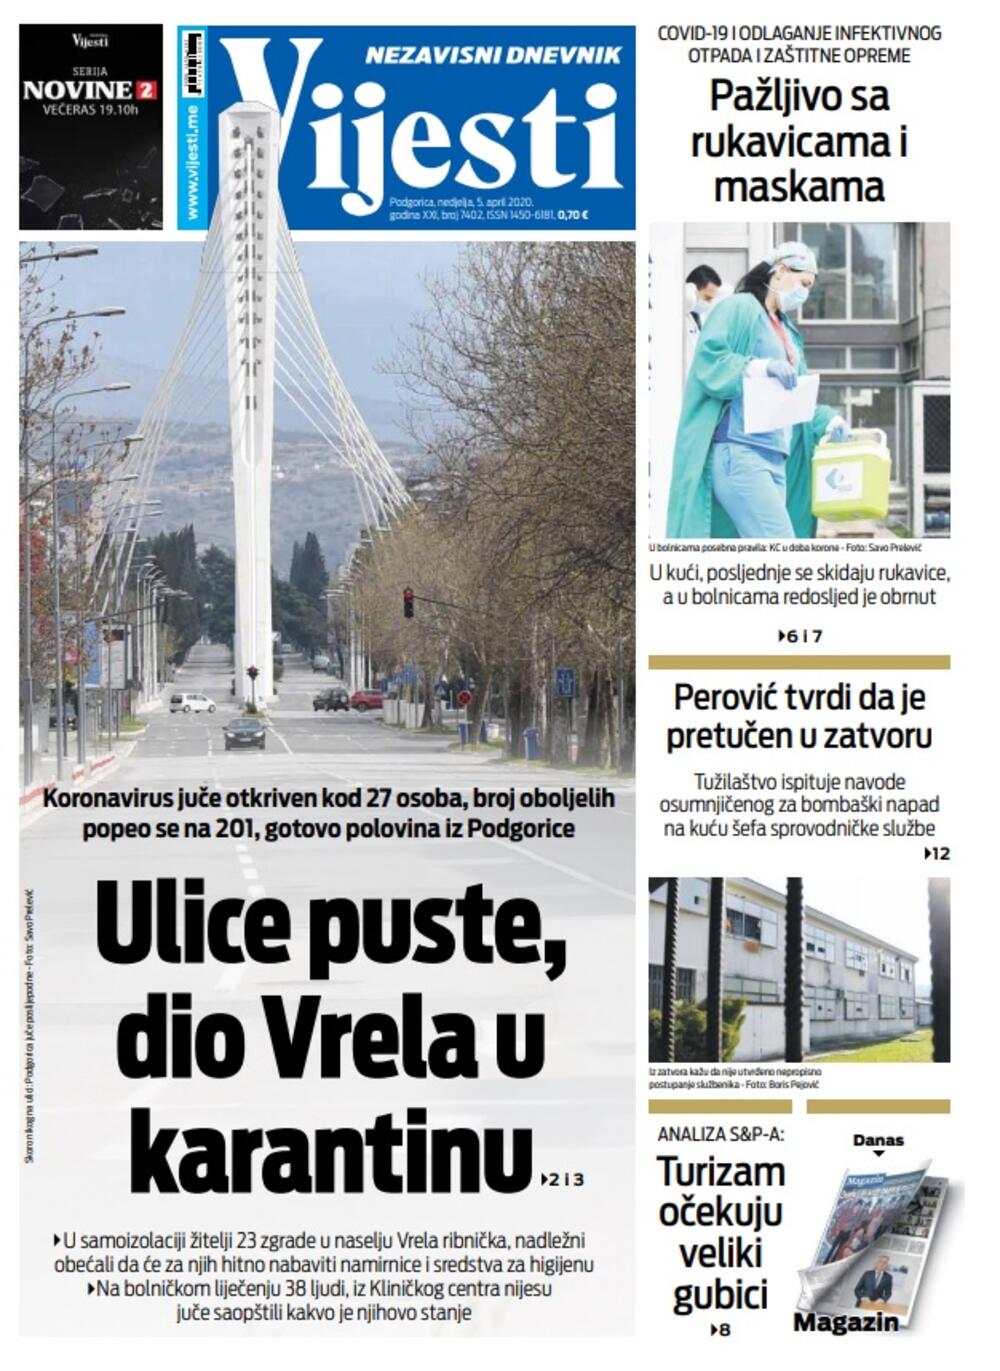 Naslovna strana "Vijesti" za nedjelju 5. april 2020. godine, Foto: "Vijesti"